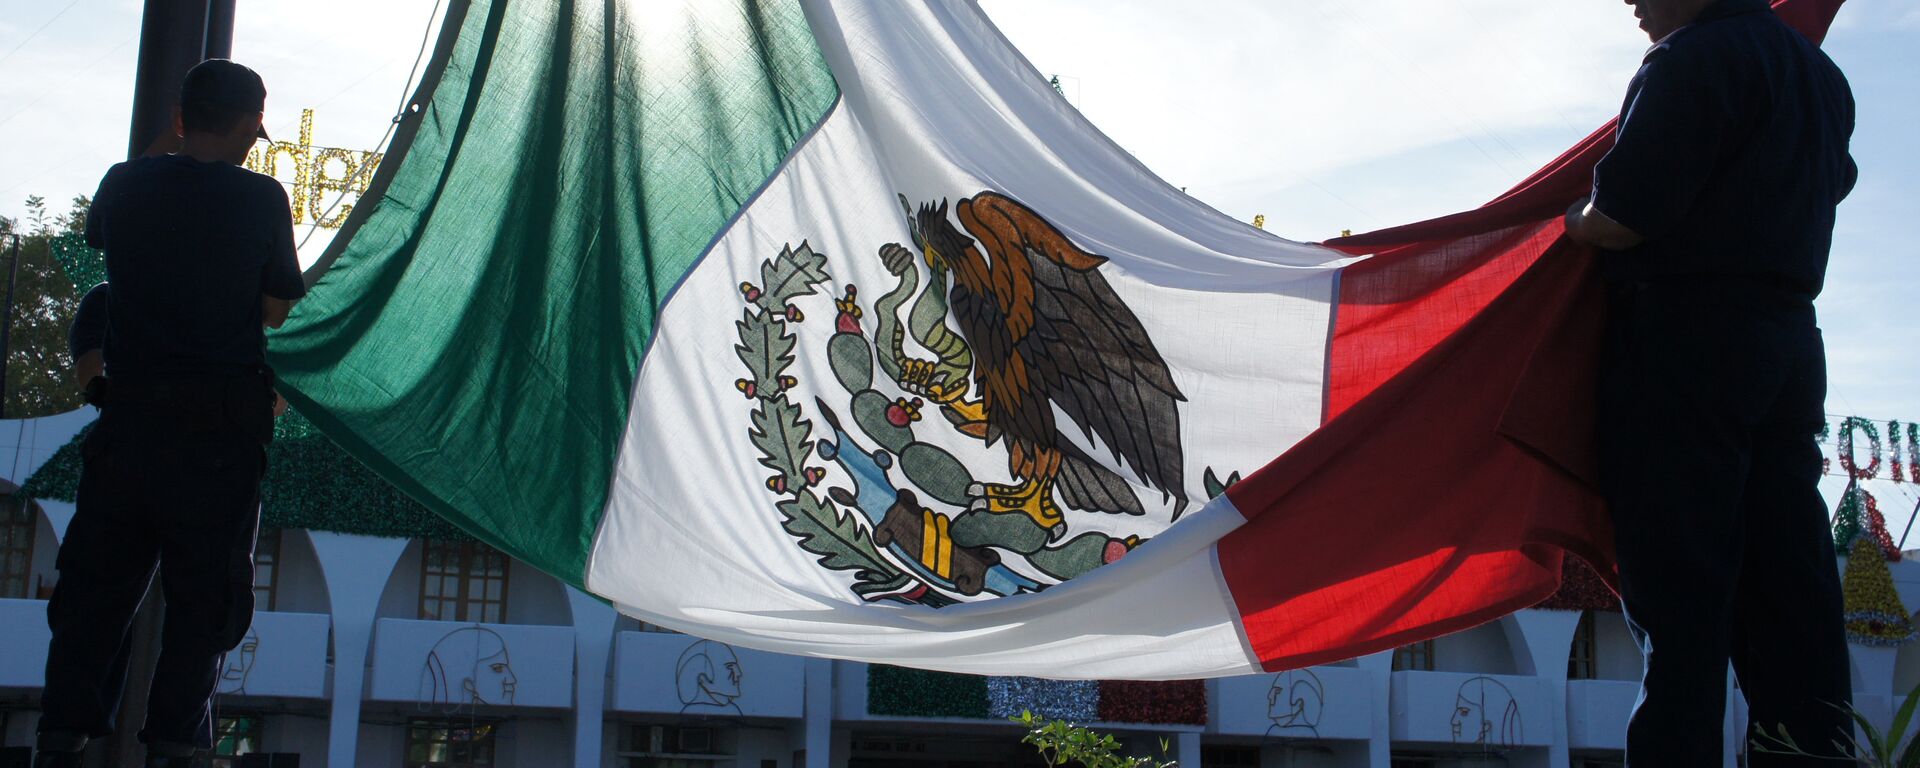 La bandera de México - Sputnik Mundo, 1920, 20.11.2019